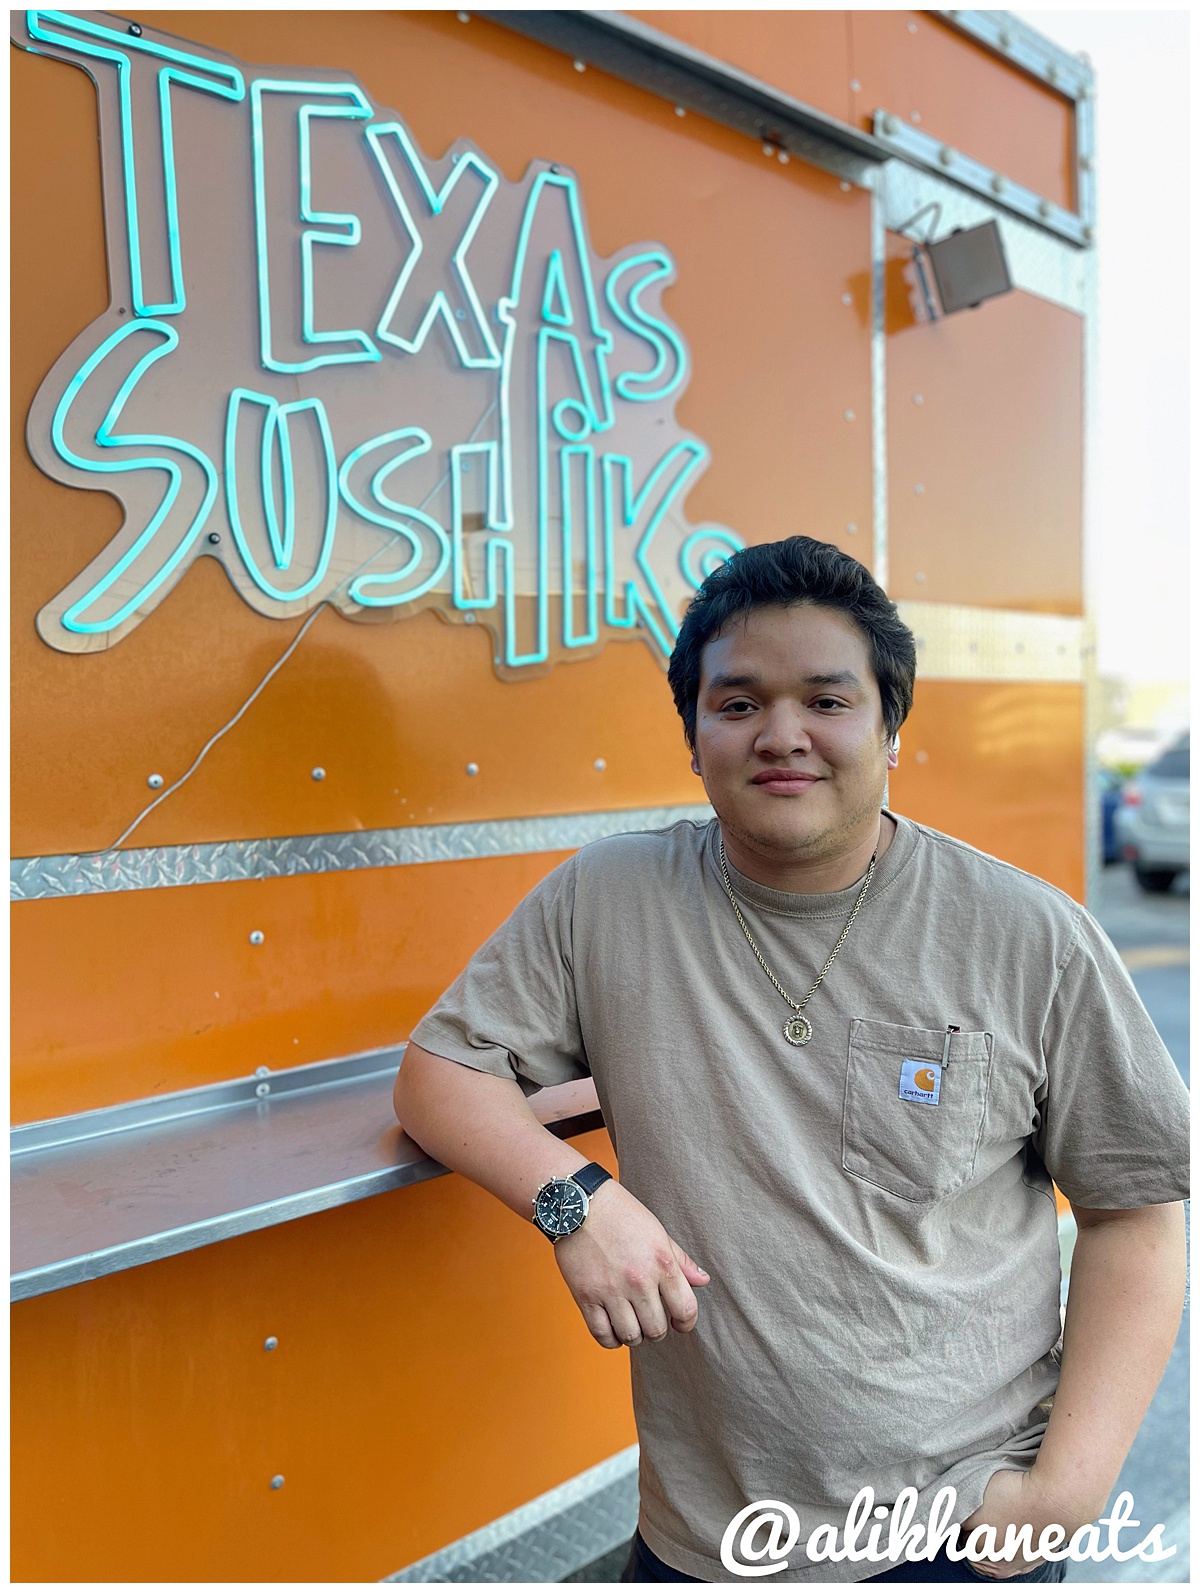 Chef Michael Carranza of Texas Sushiko